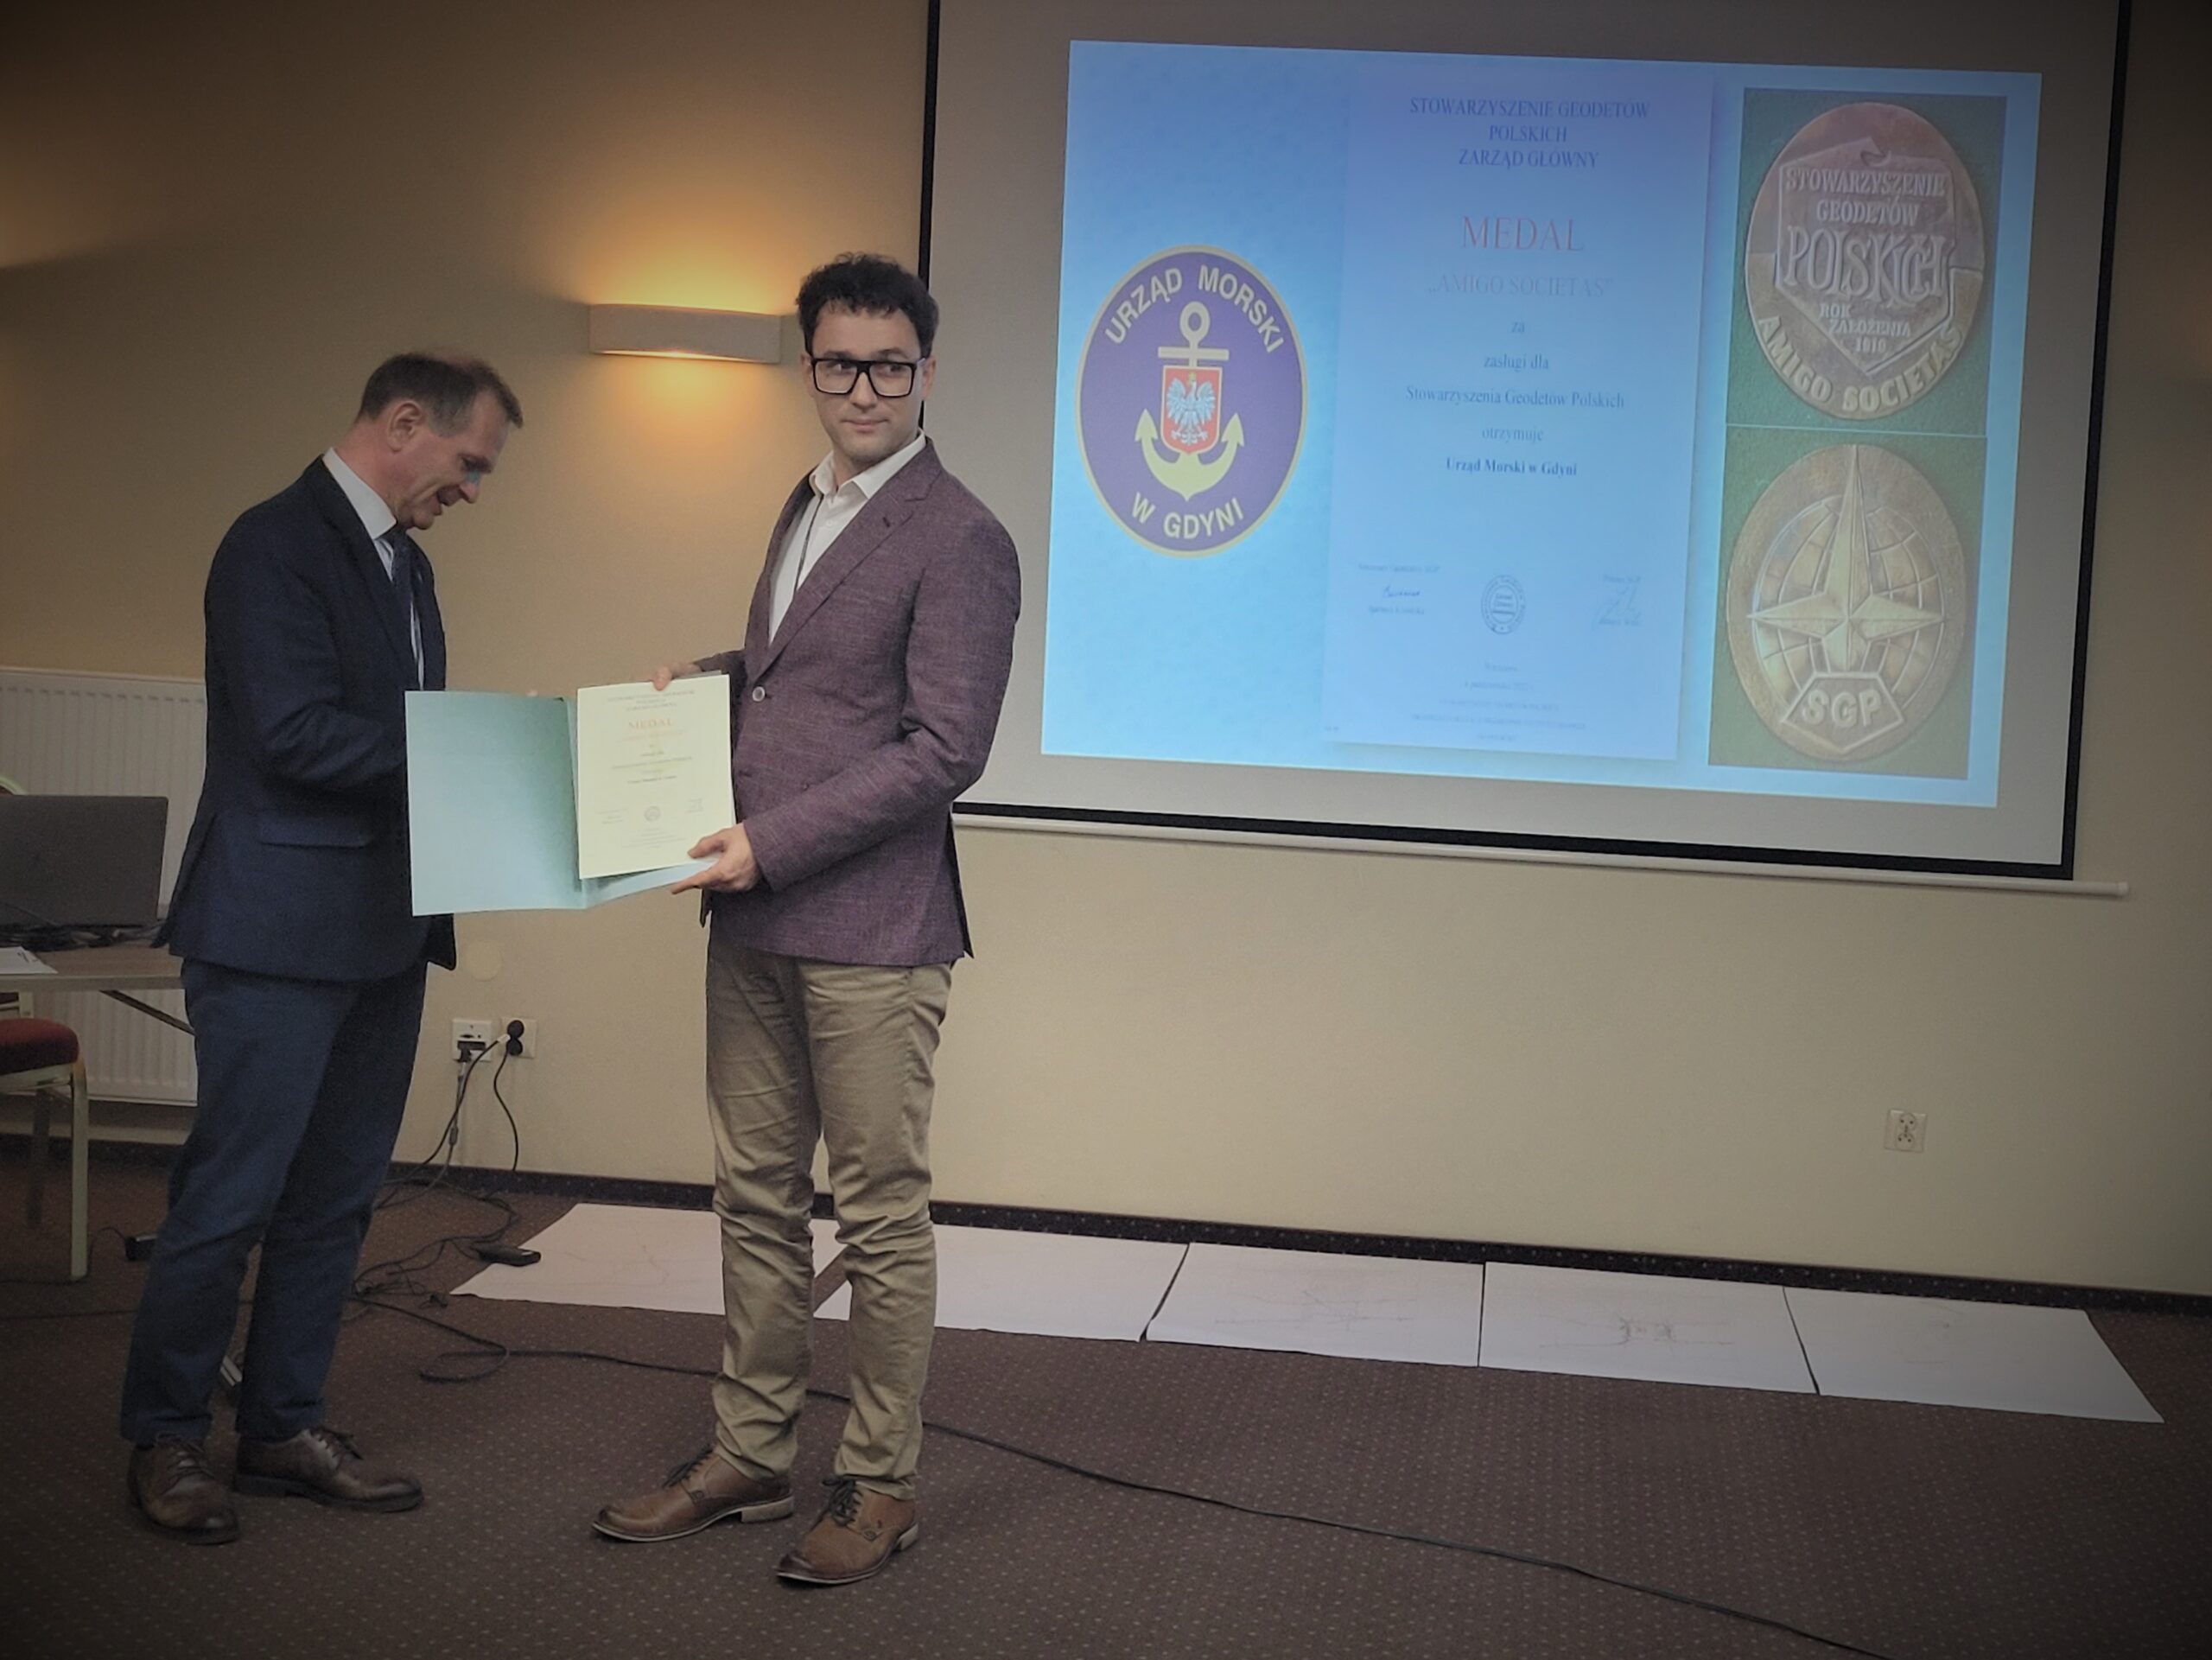 Wręczenie medalu Amigo Societas Urzędowi Morskiemu w Gdyni - za zasługi dla Stowarzyszenia Geodetów Polskich 